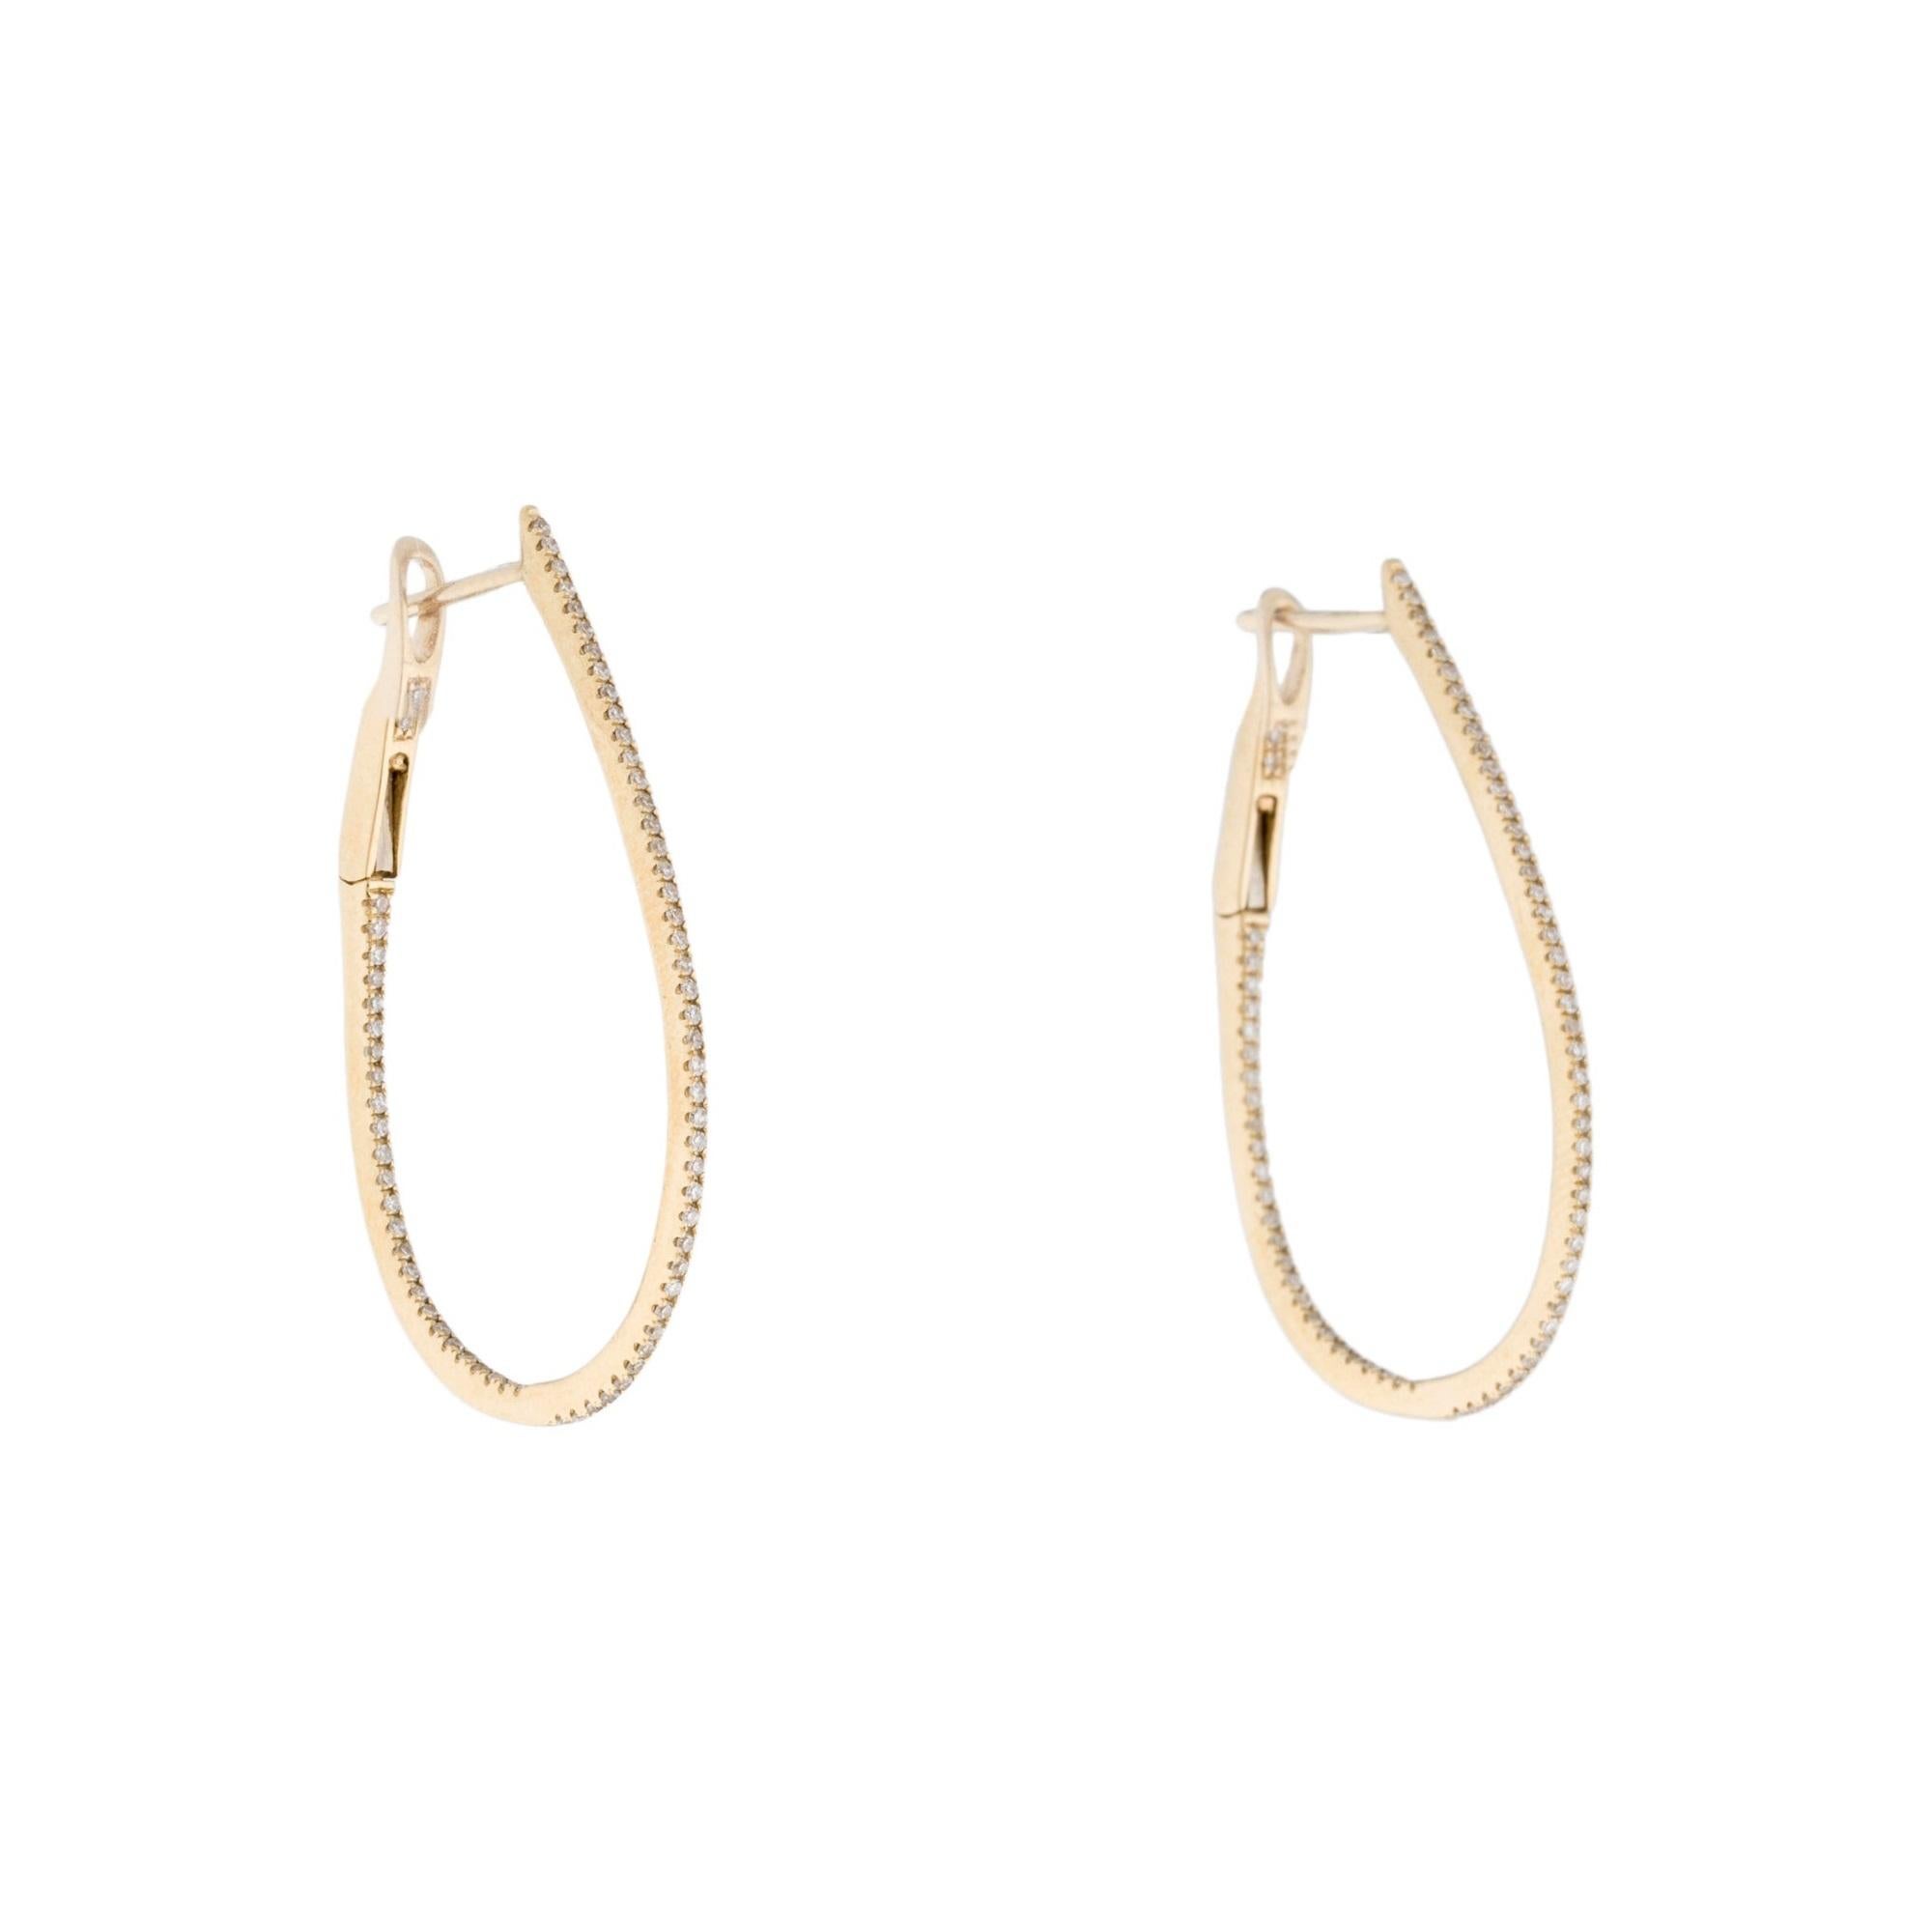 Lassen Sie Ihre Ohrläppchen im klassischen Glanz dieser luxuriösen, birnenförmigen Skinny Hoop-Ohrringe erstrahlen! Das Design aus 14-karätigem Weiß-, Gelb- oder Roségold ist mit einer Vielzahl von Diamanten besetzt, die oben und unten schillern.